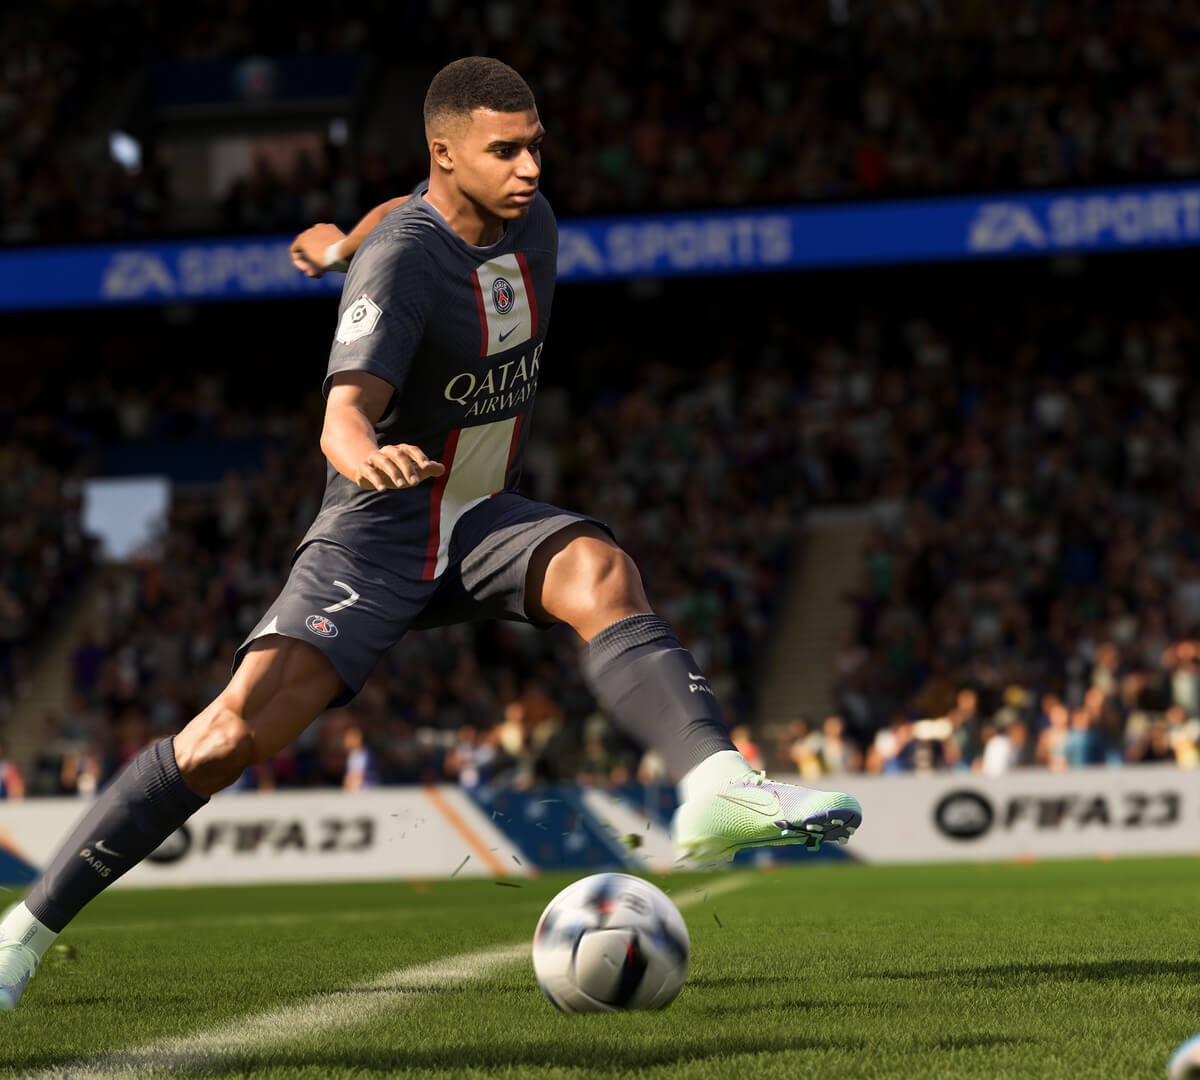 FIFA 23: atualização corrige problemas no modo carreira